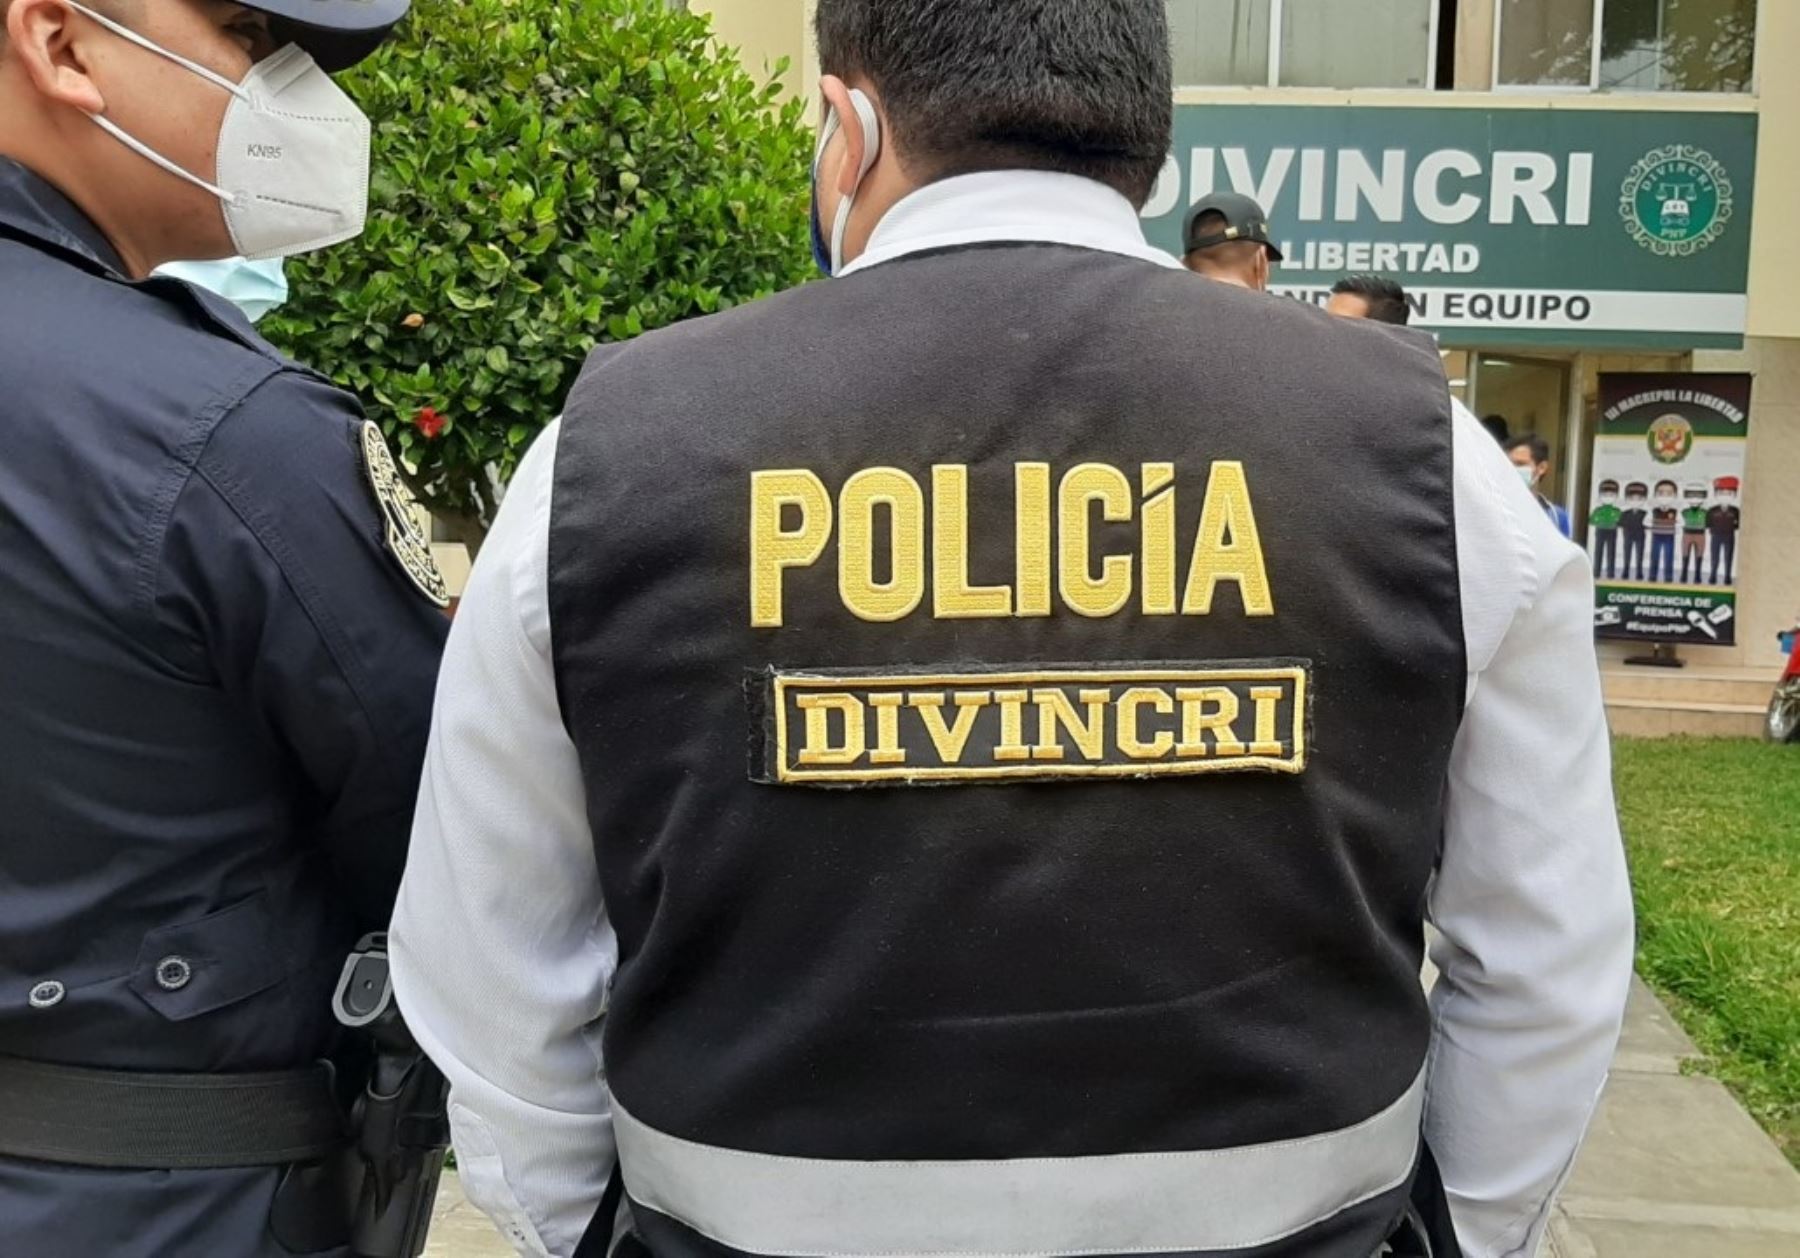 La Policía Nacional intervino a 11 agentes del orden que participaban de una fiesta en el distrito de Florencia de Mora, en Trujillo. ANDINA/Difusión